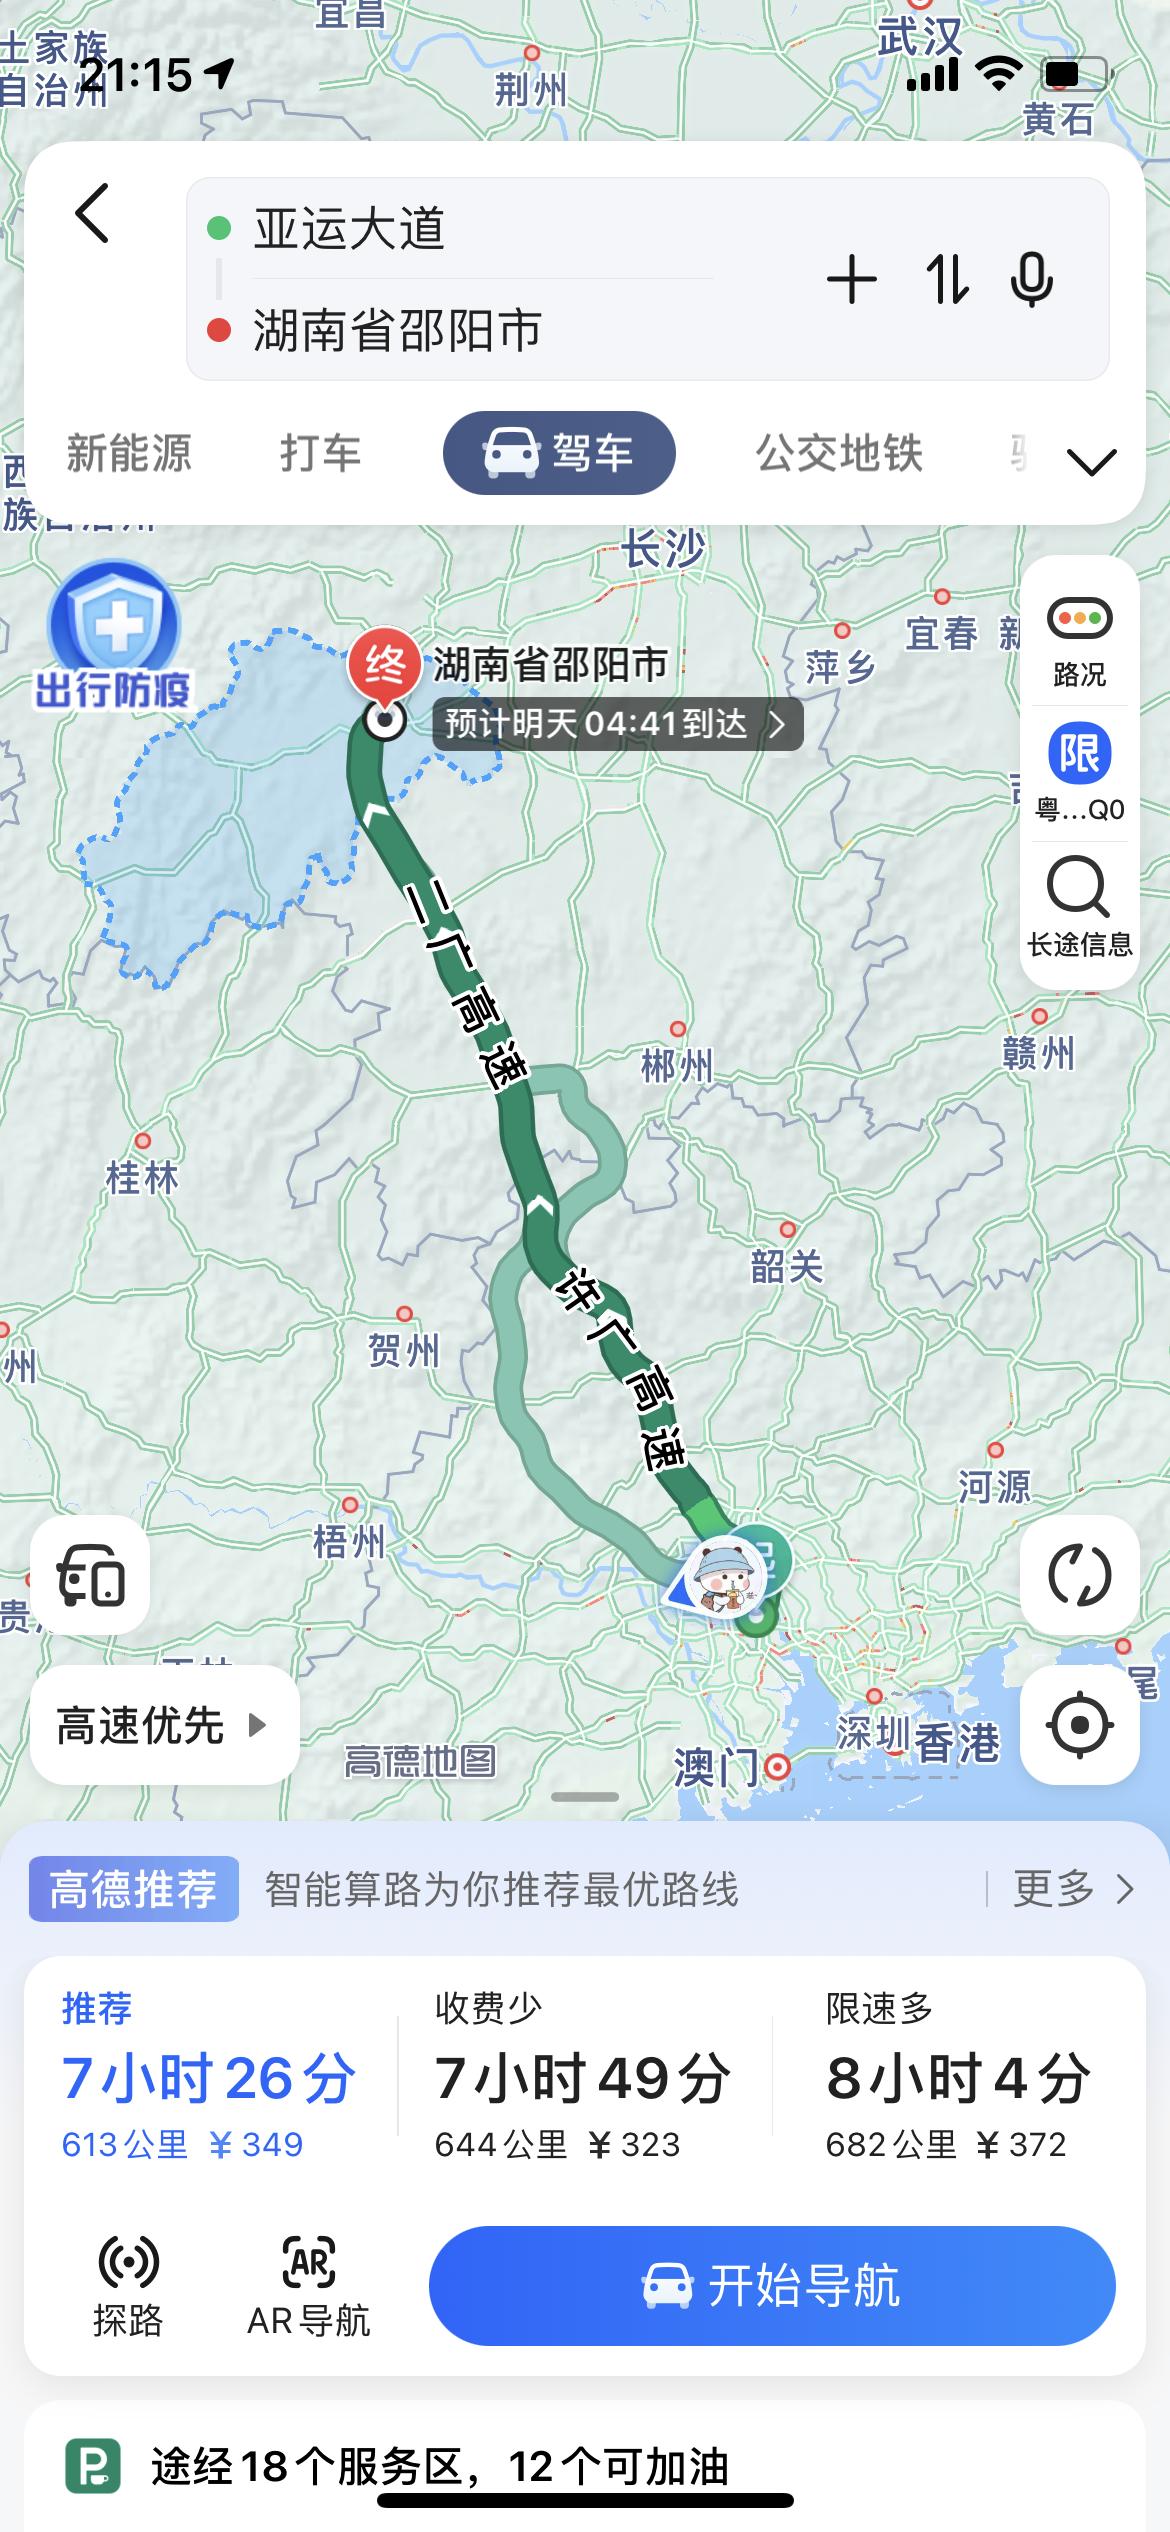 丰田凯美瑞 国庆想从广州回湖南邵东， 全程600多公里。 目的是减少堵车， 提升开车体验。  行程准备上大家有什么建议、